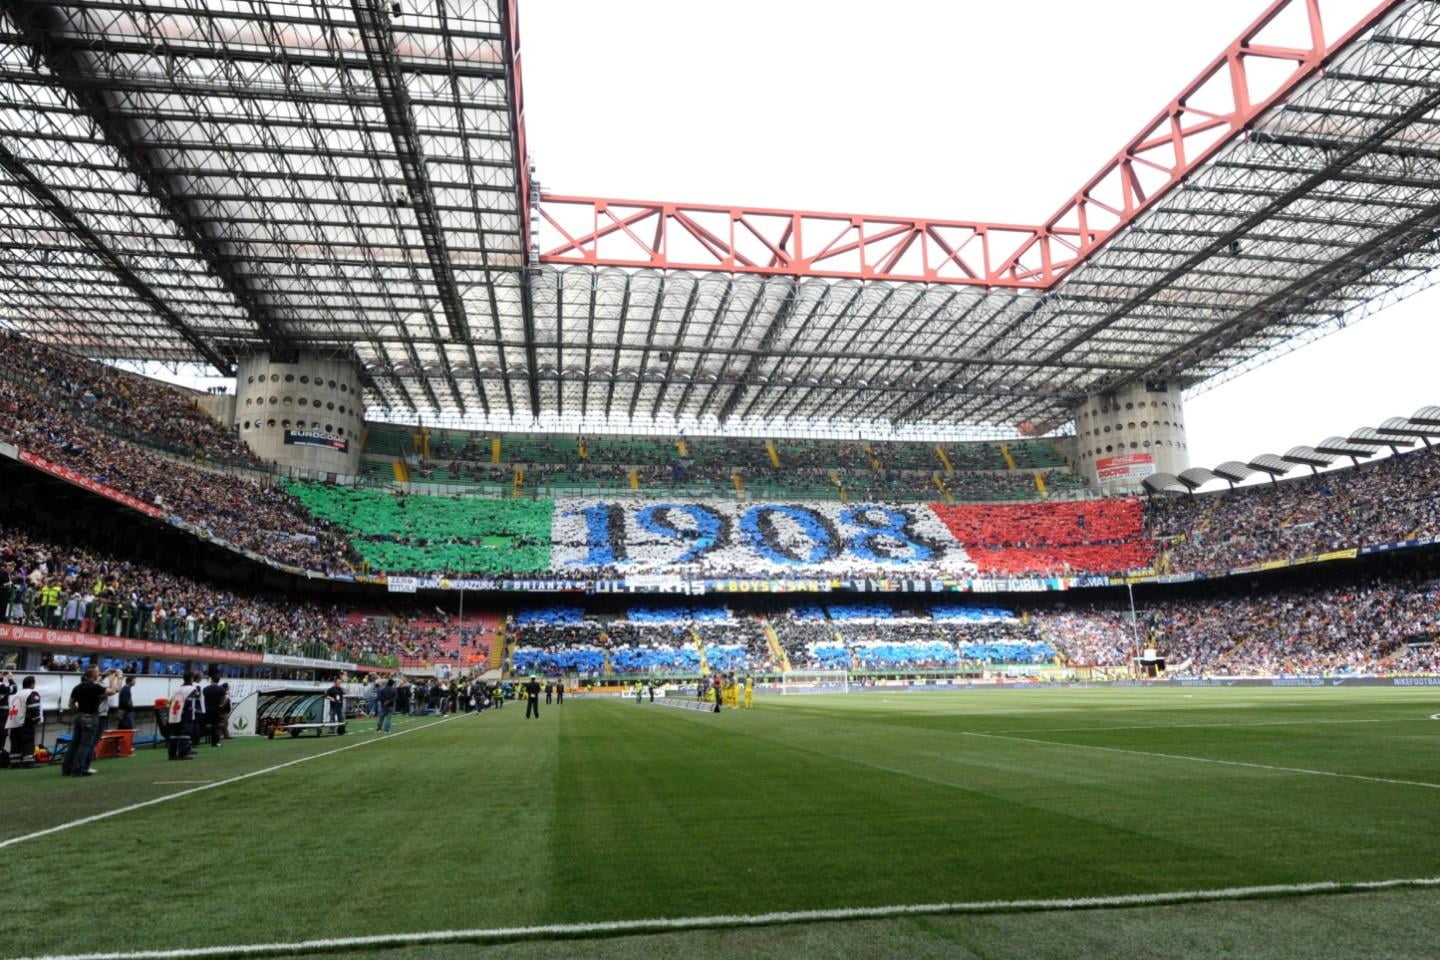 Inter Milan - Hellas Verona, 6 januariom 20:45